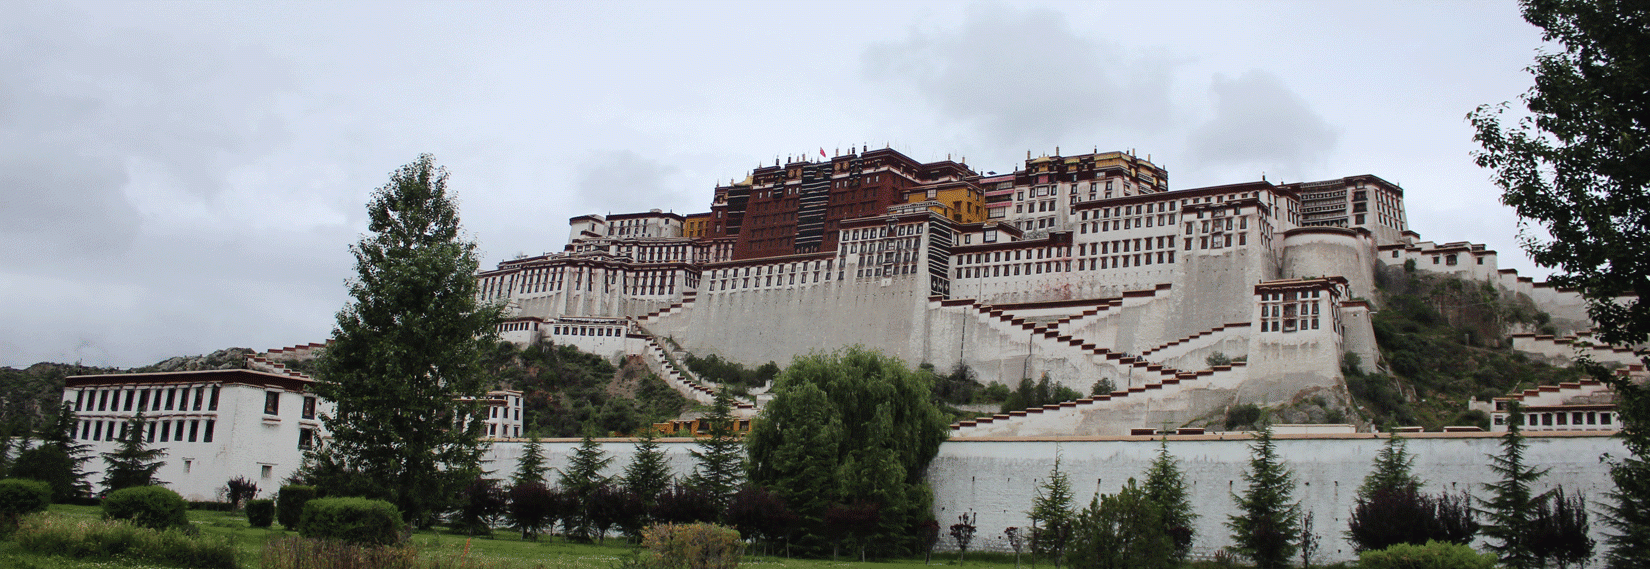 Potala Palace in Lhasa 